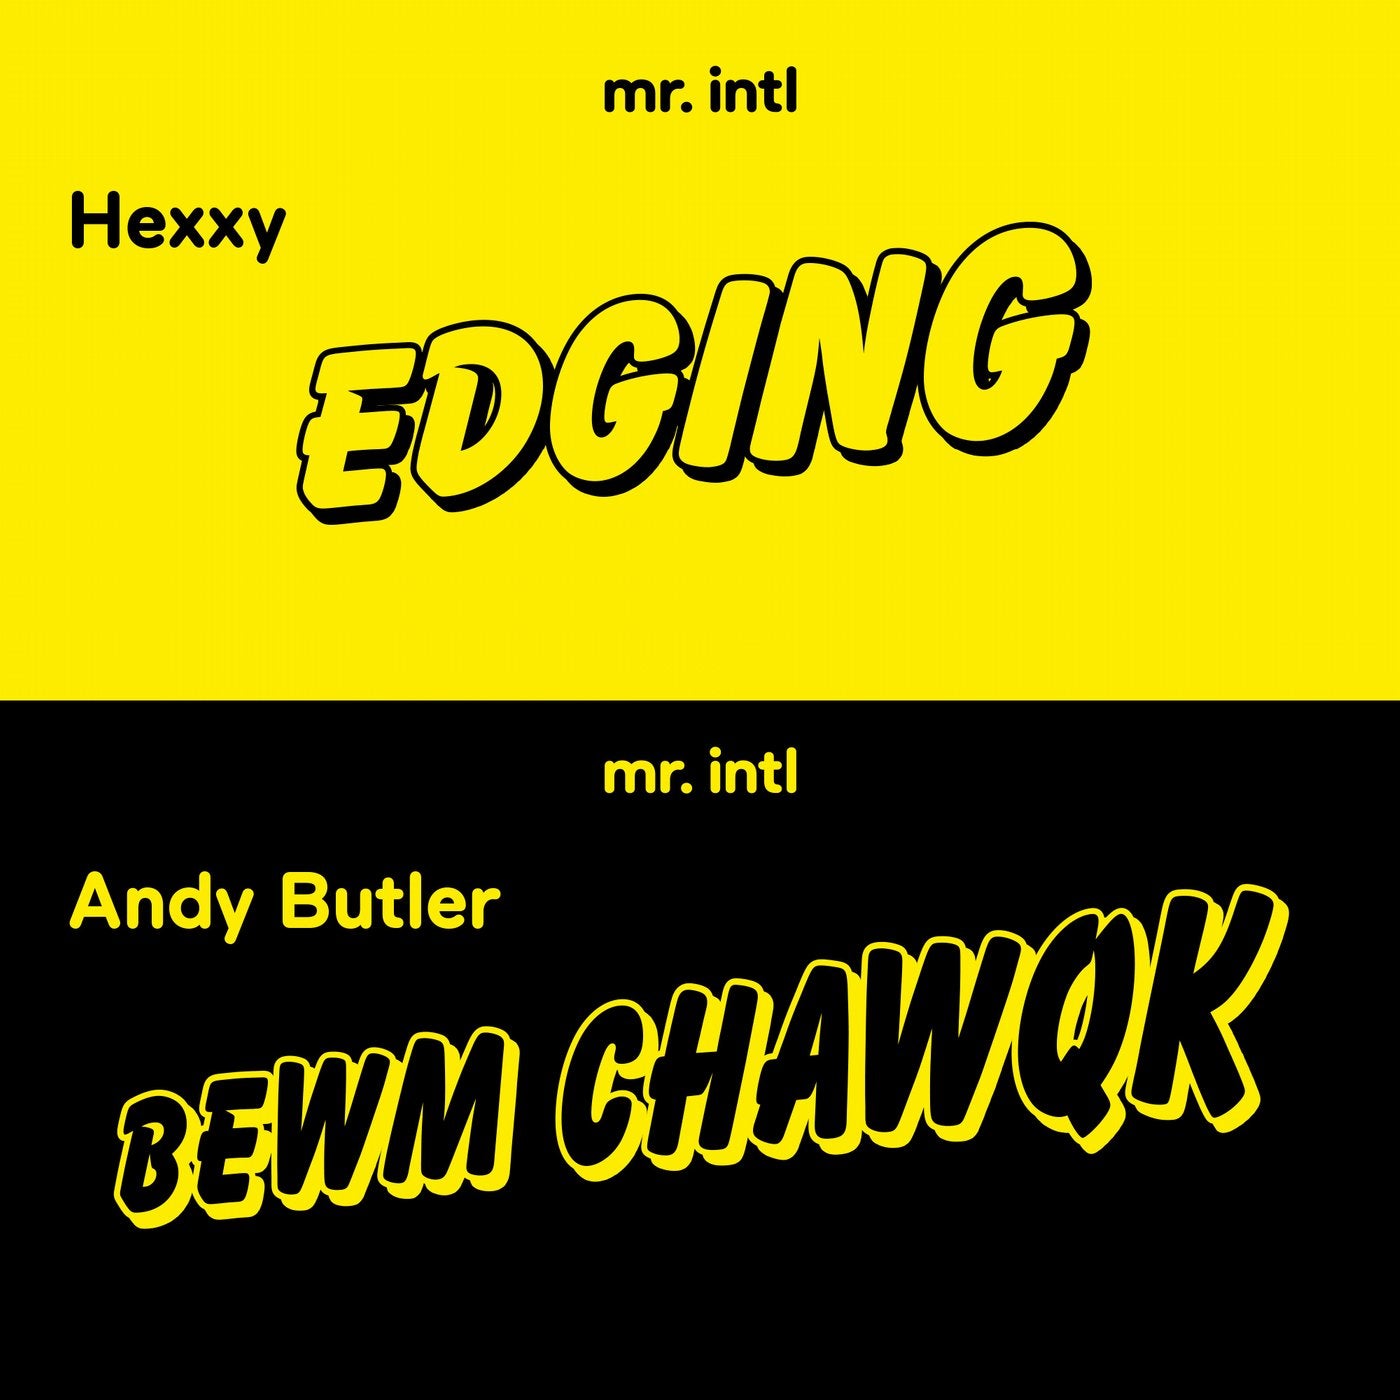 Edging / Bewm Chawqk